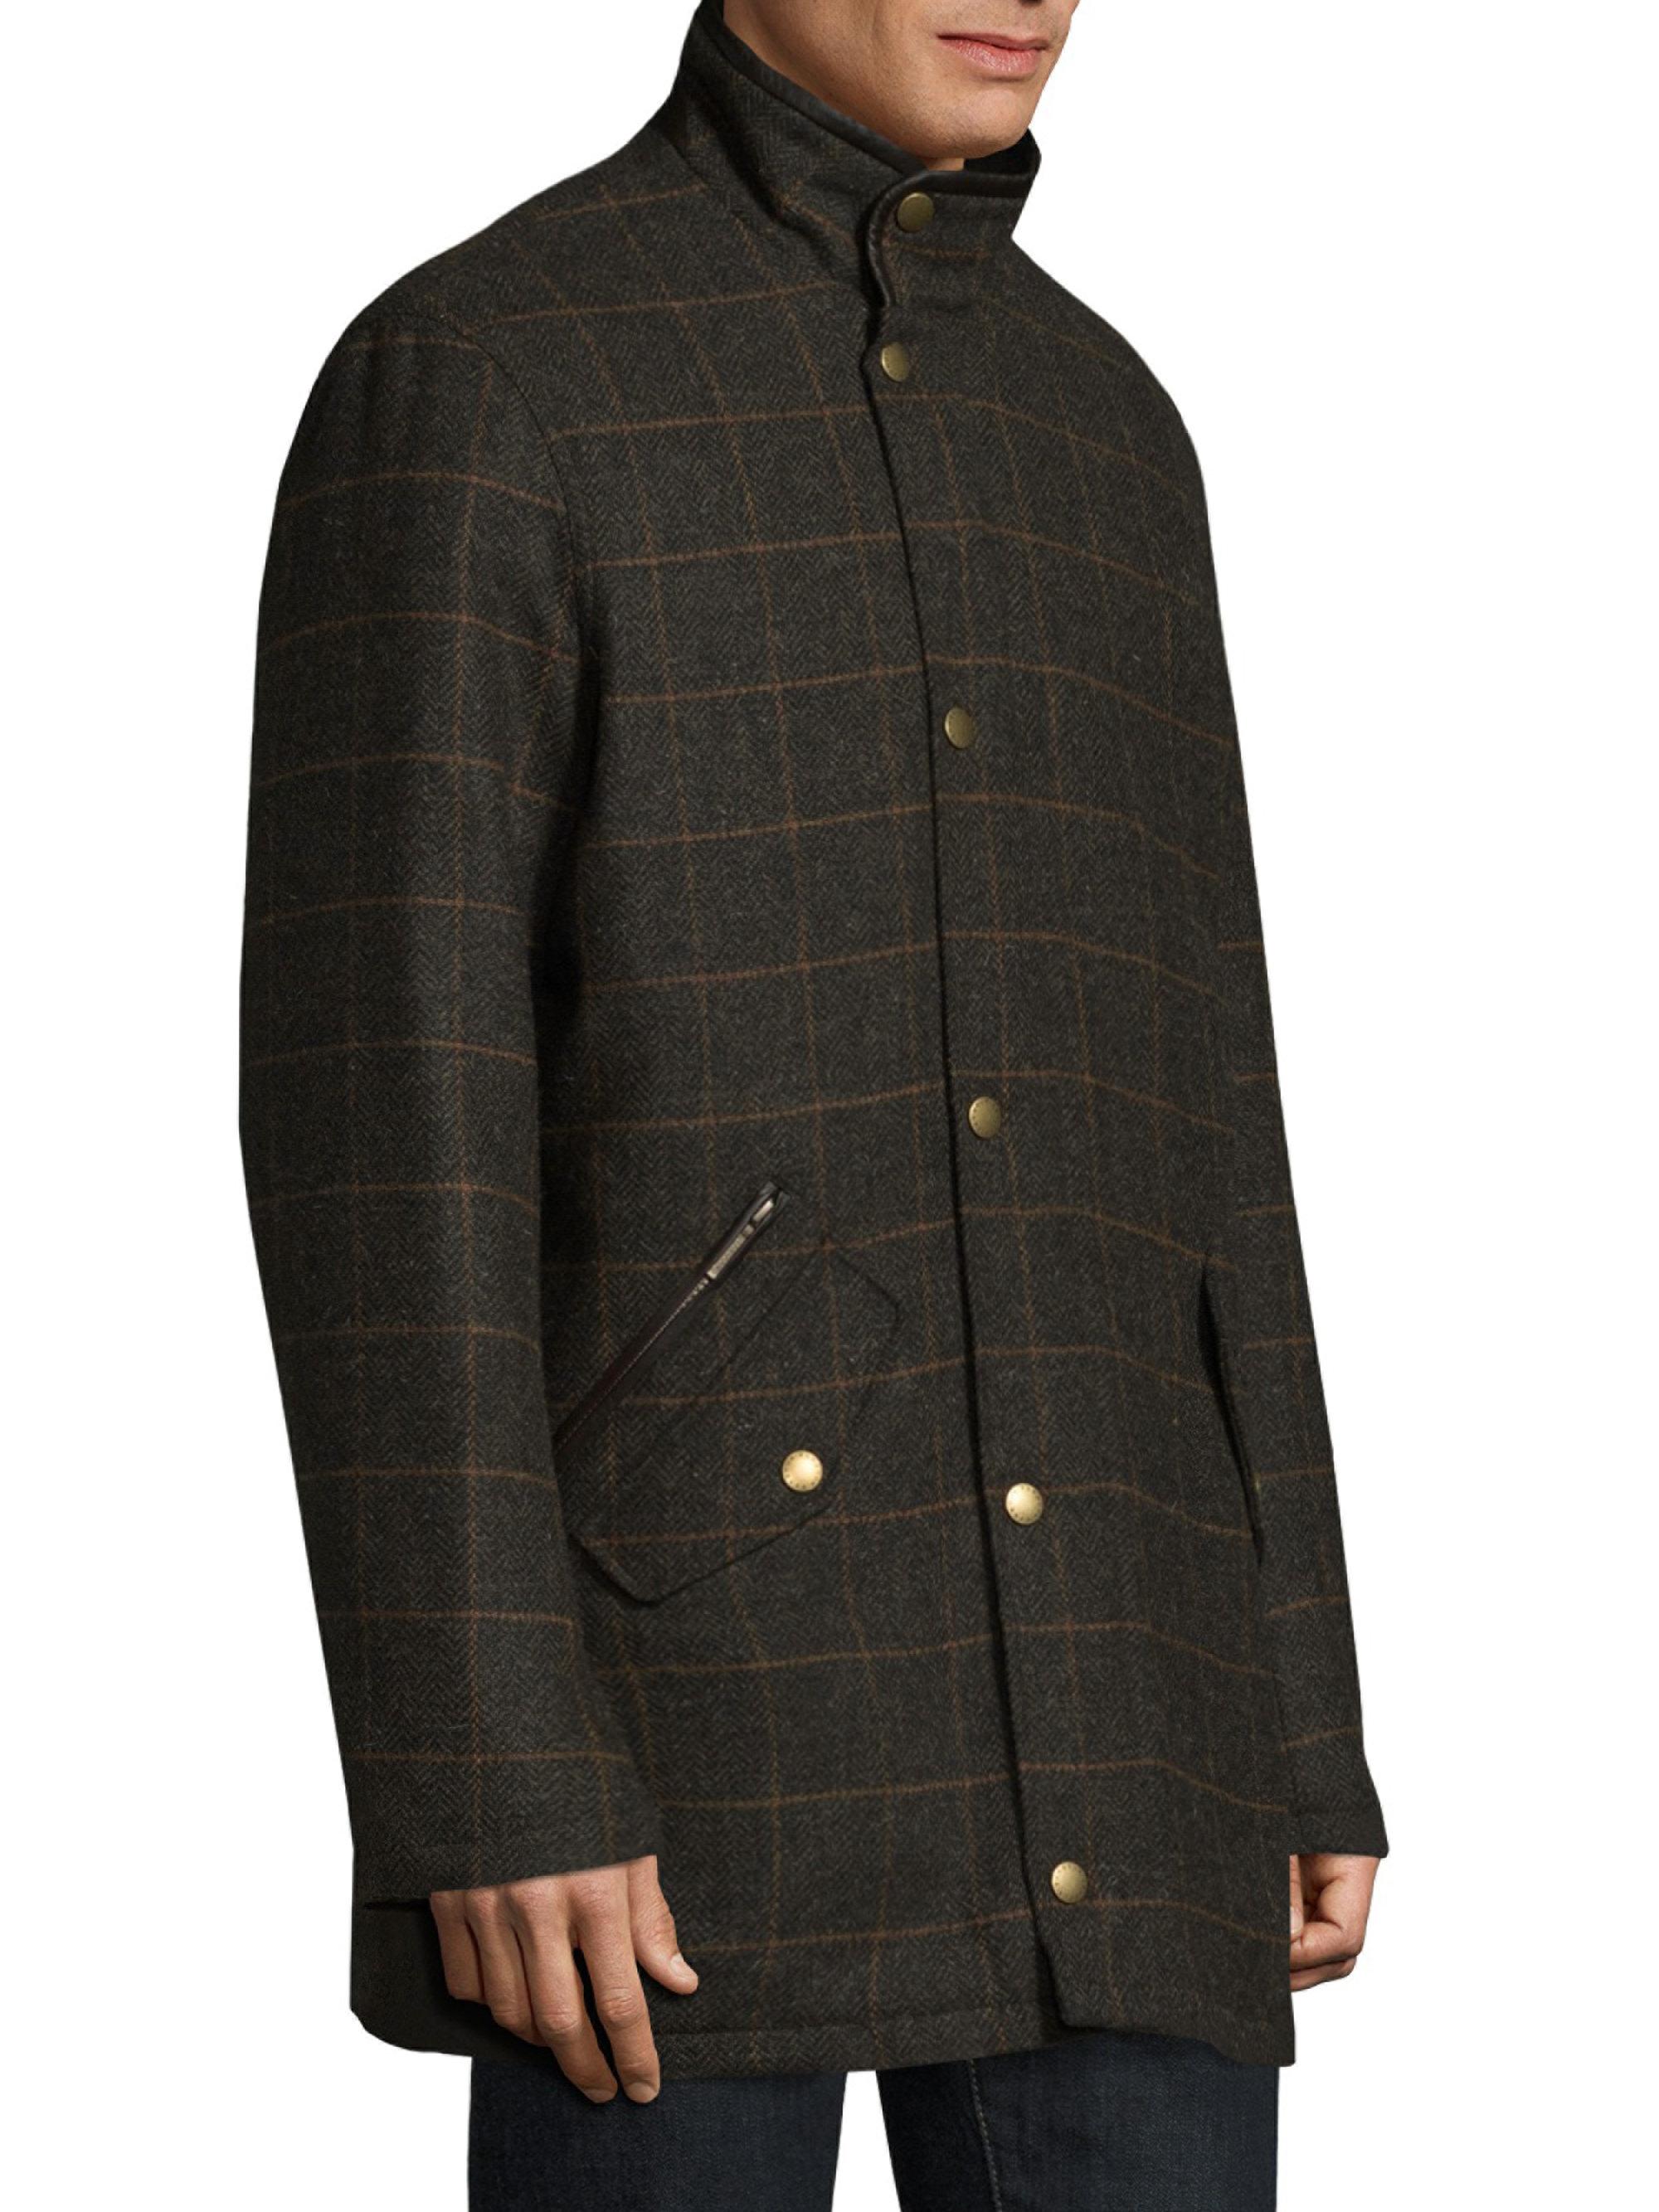 Barbour Tweed Highneck Jacket in Olive (Green) for Men - Lyst